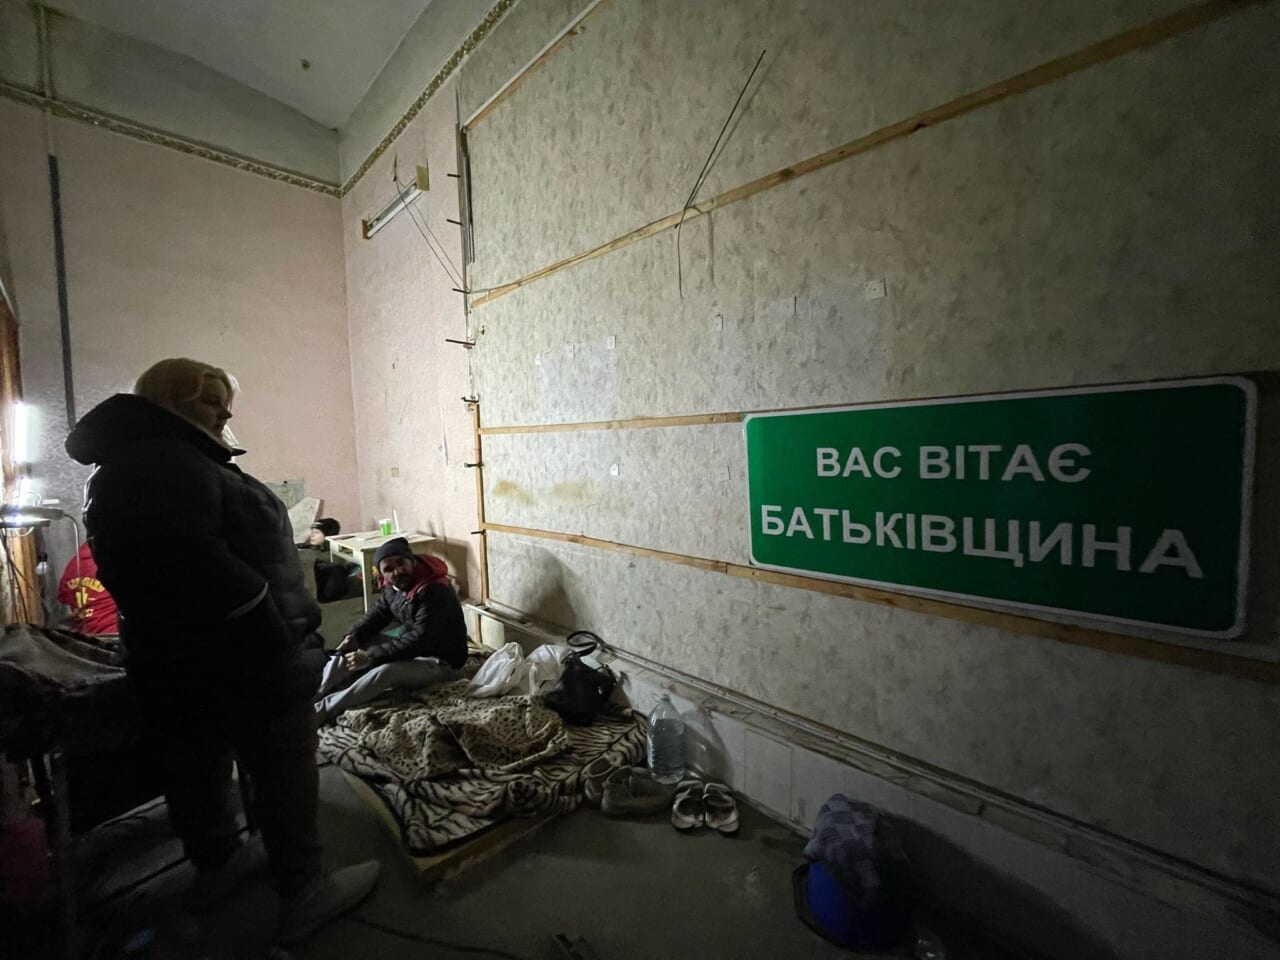 「祖国へようこそ」とウクライナ語で表記された道路標識の作品はシェルターへも持ち込まれている。